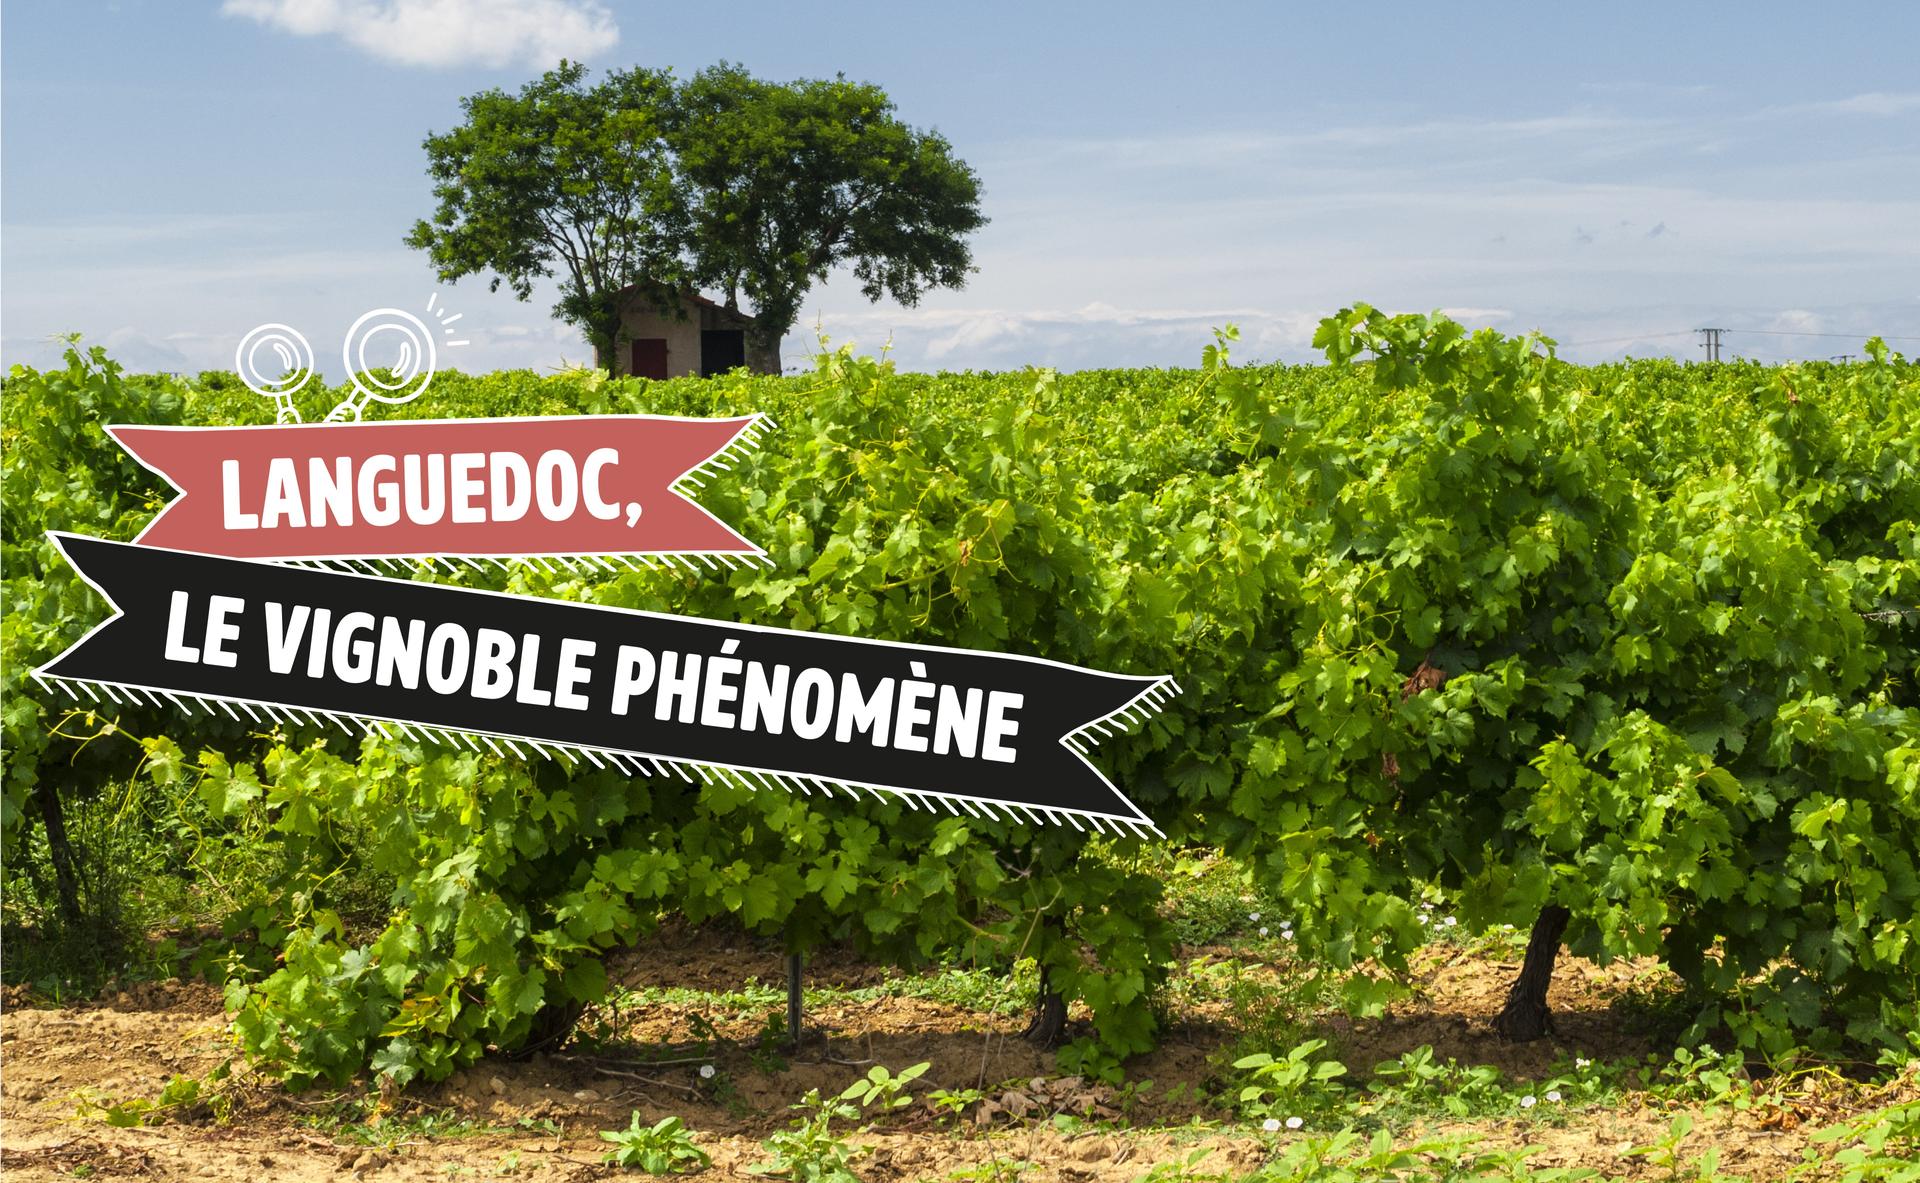 Languedoc, le vignoble phénomène